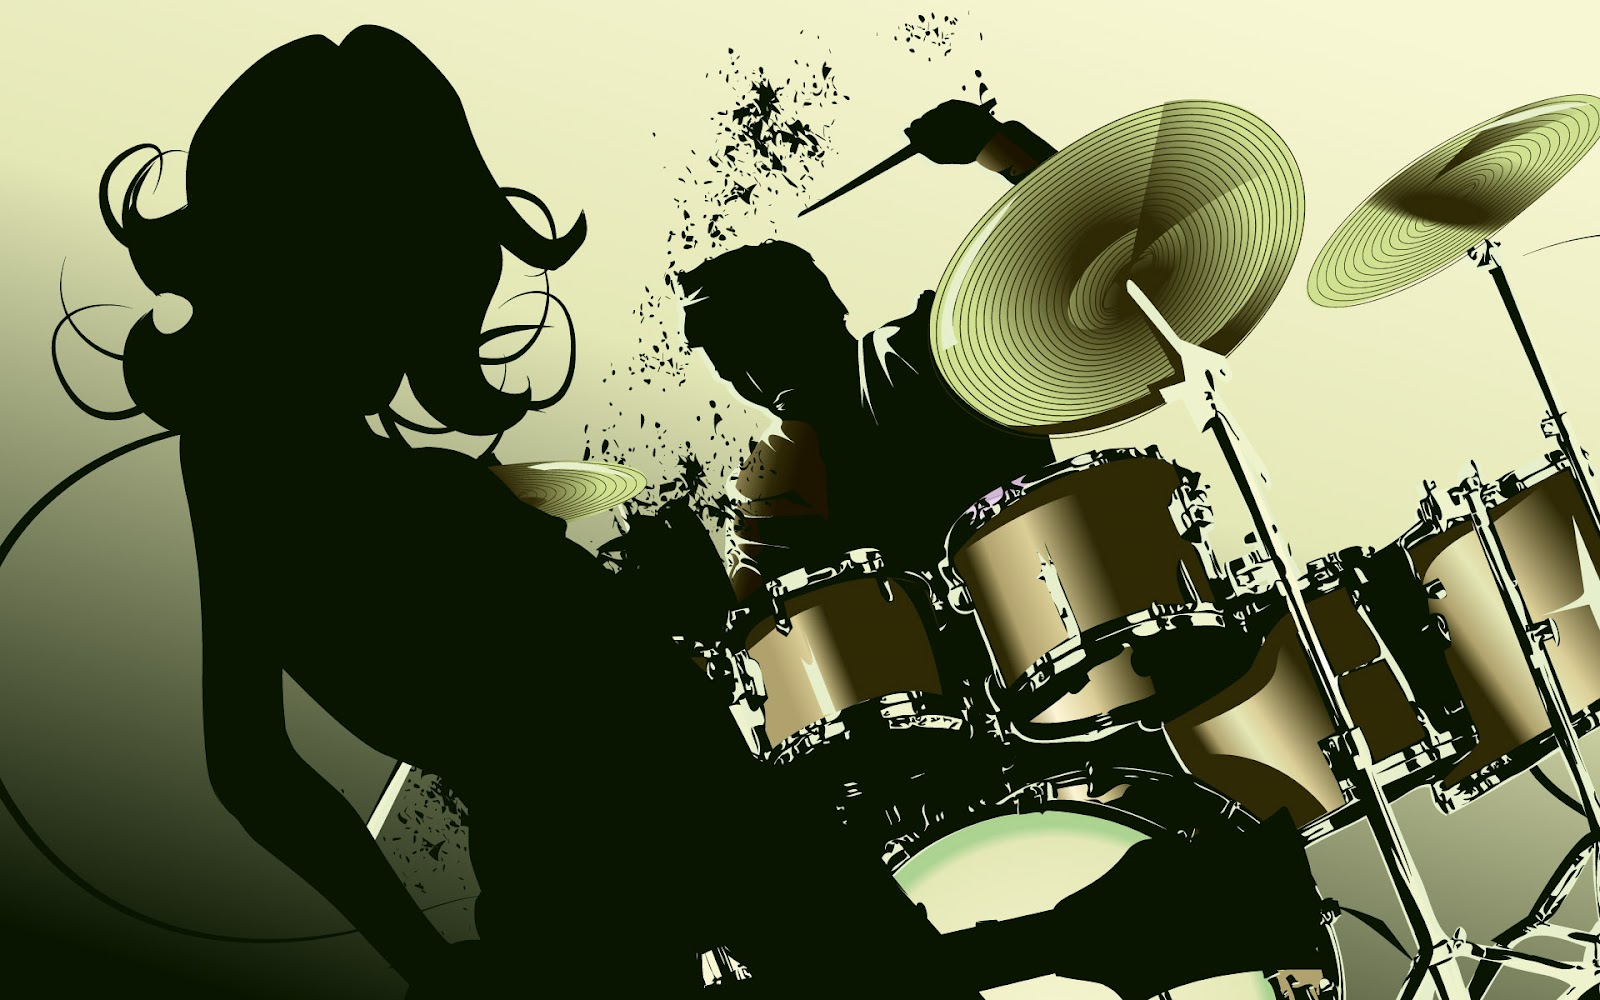 HD drums wallpapers | Peakpx